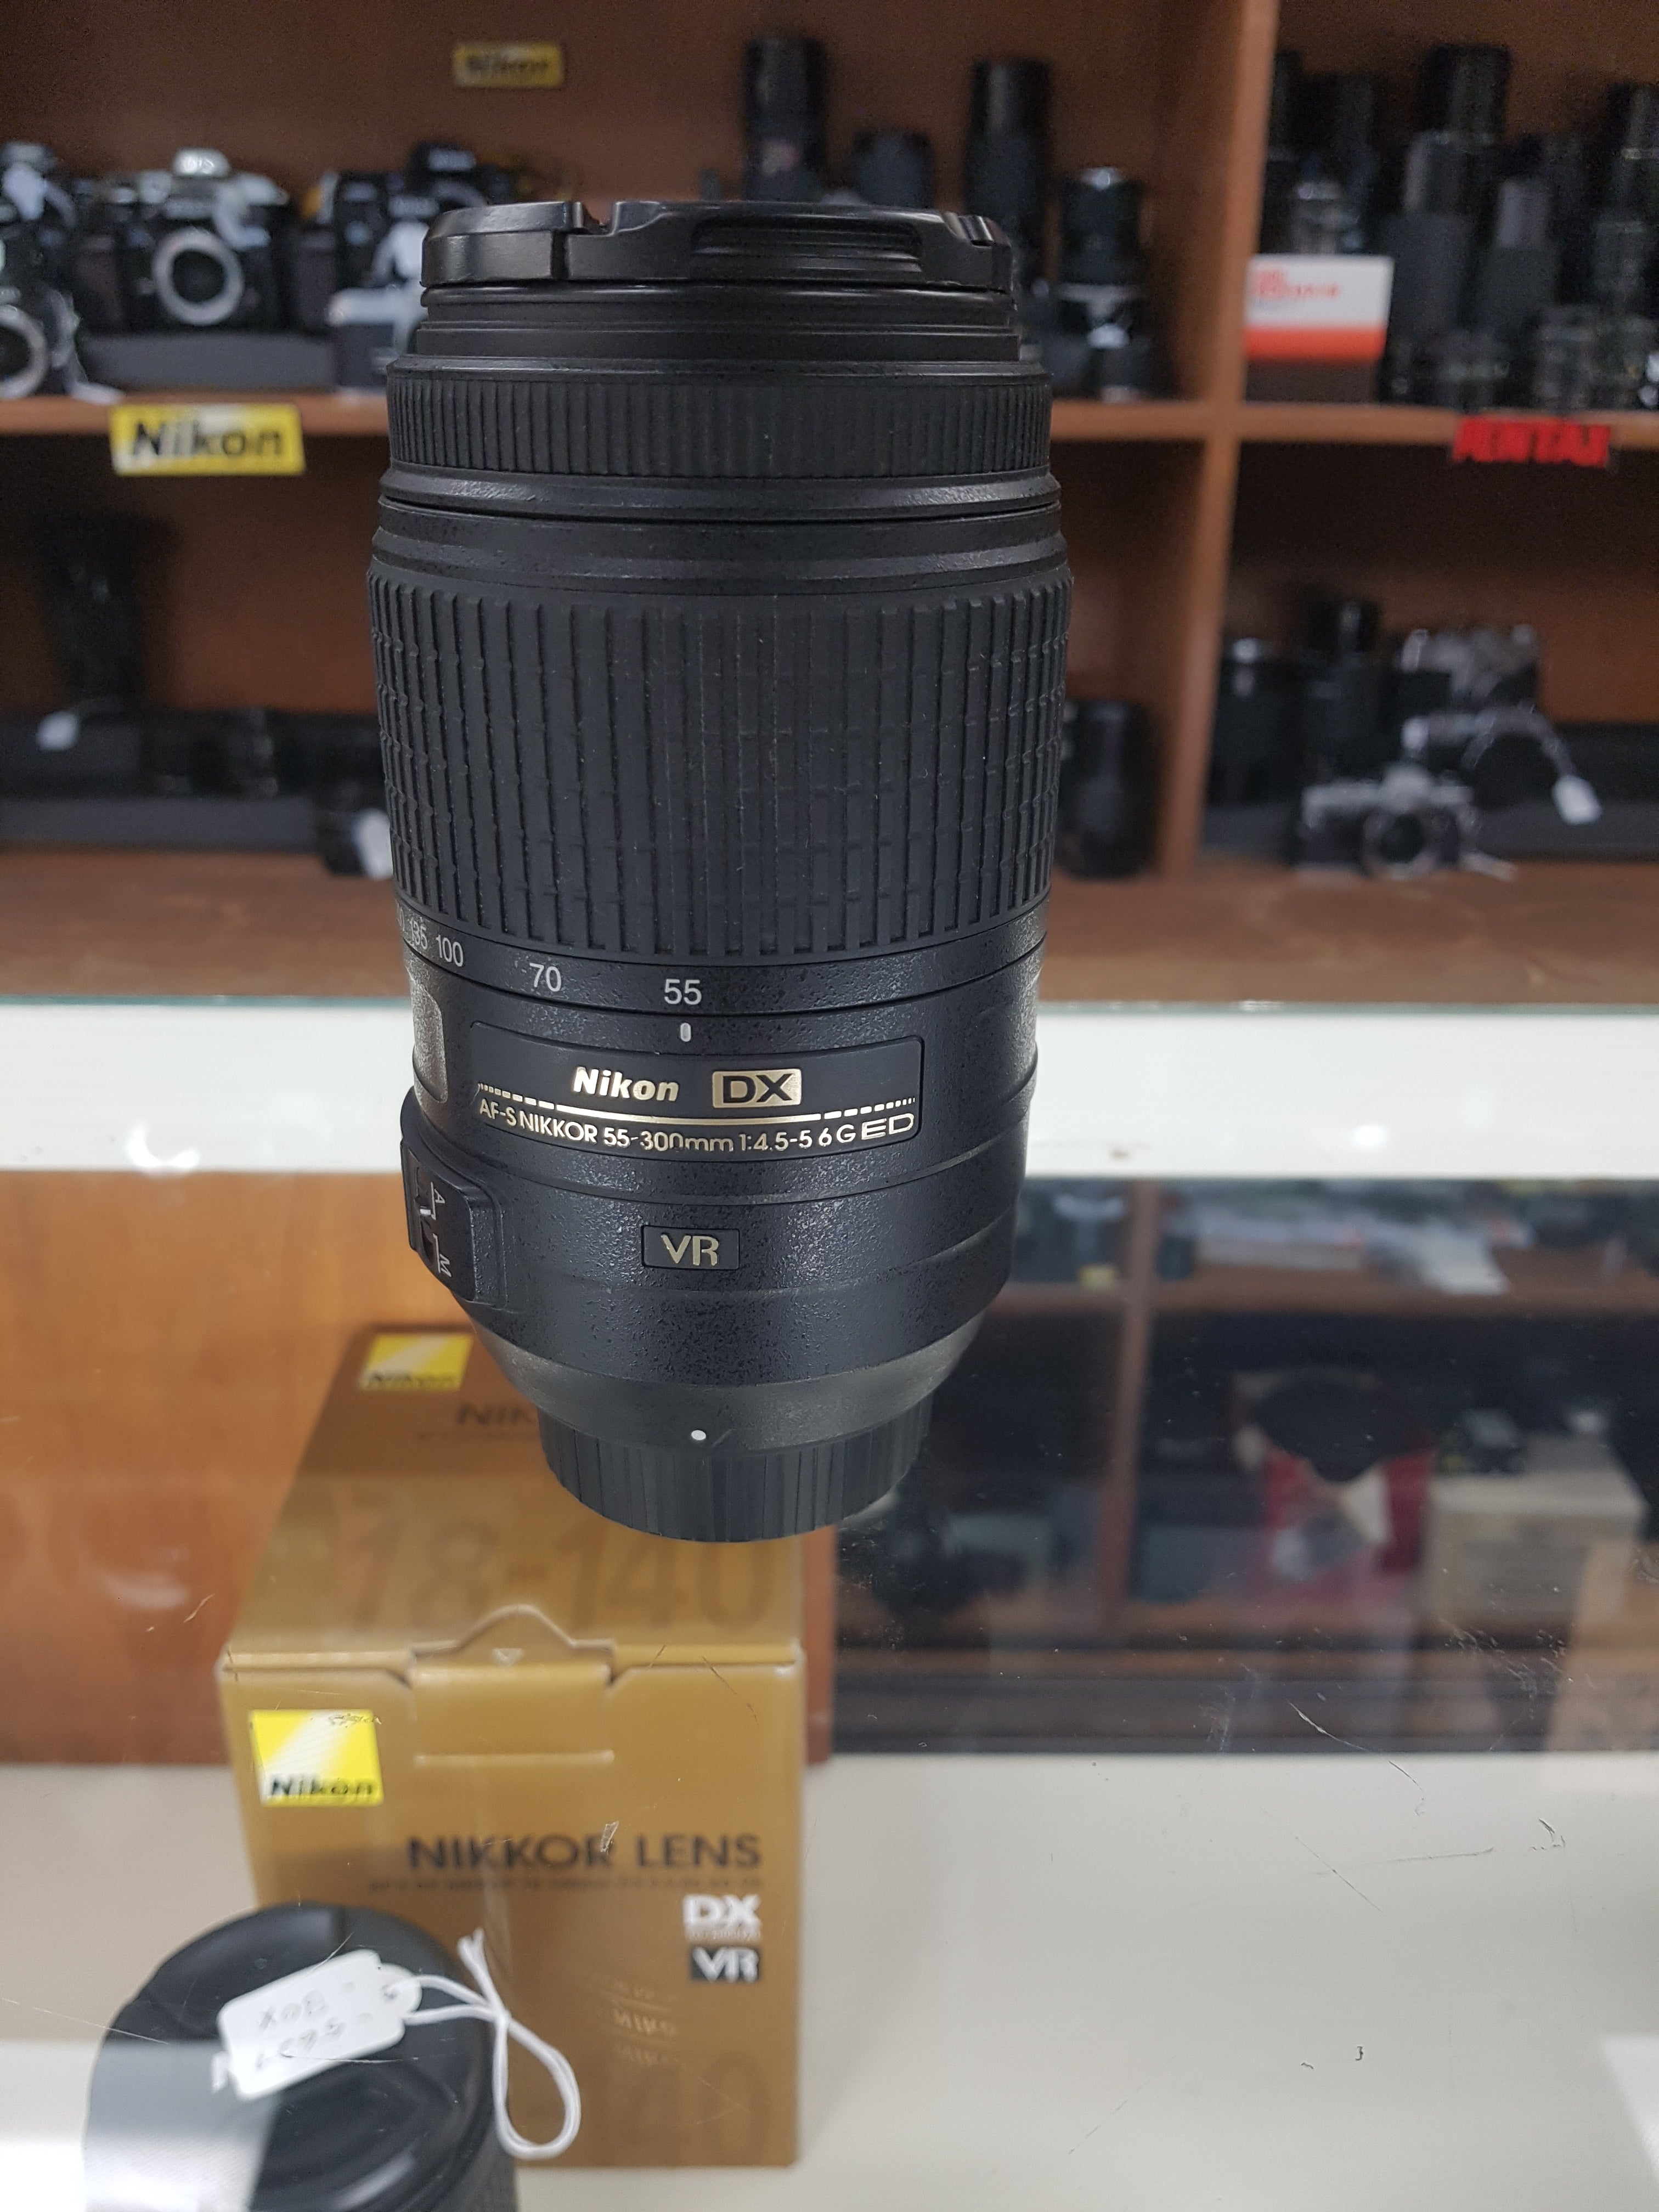 AF-S DX Nikon 55-300mm f/4.5-5.6G ED VR Lens - Used Condition 9.5/10